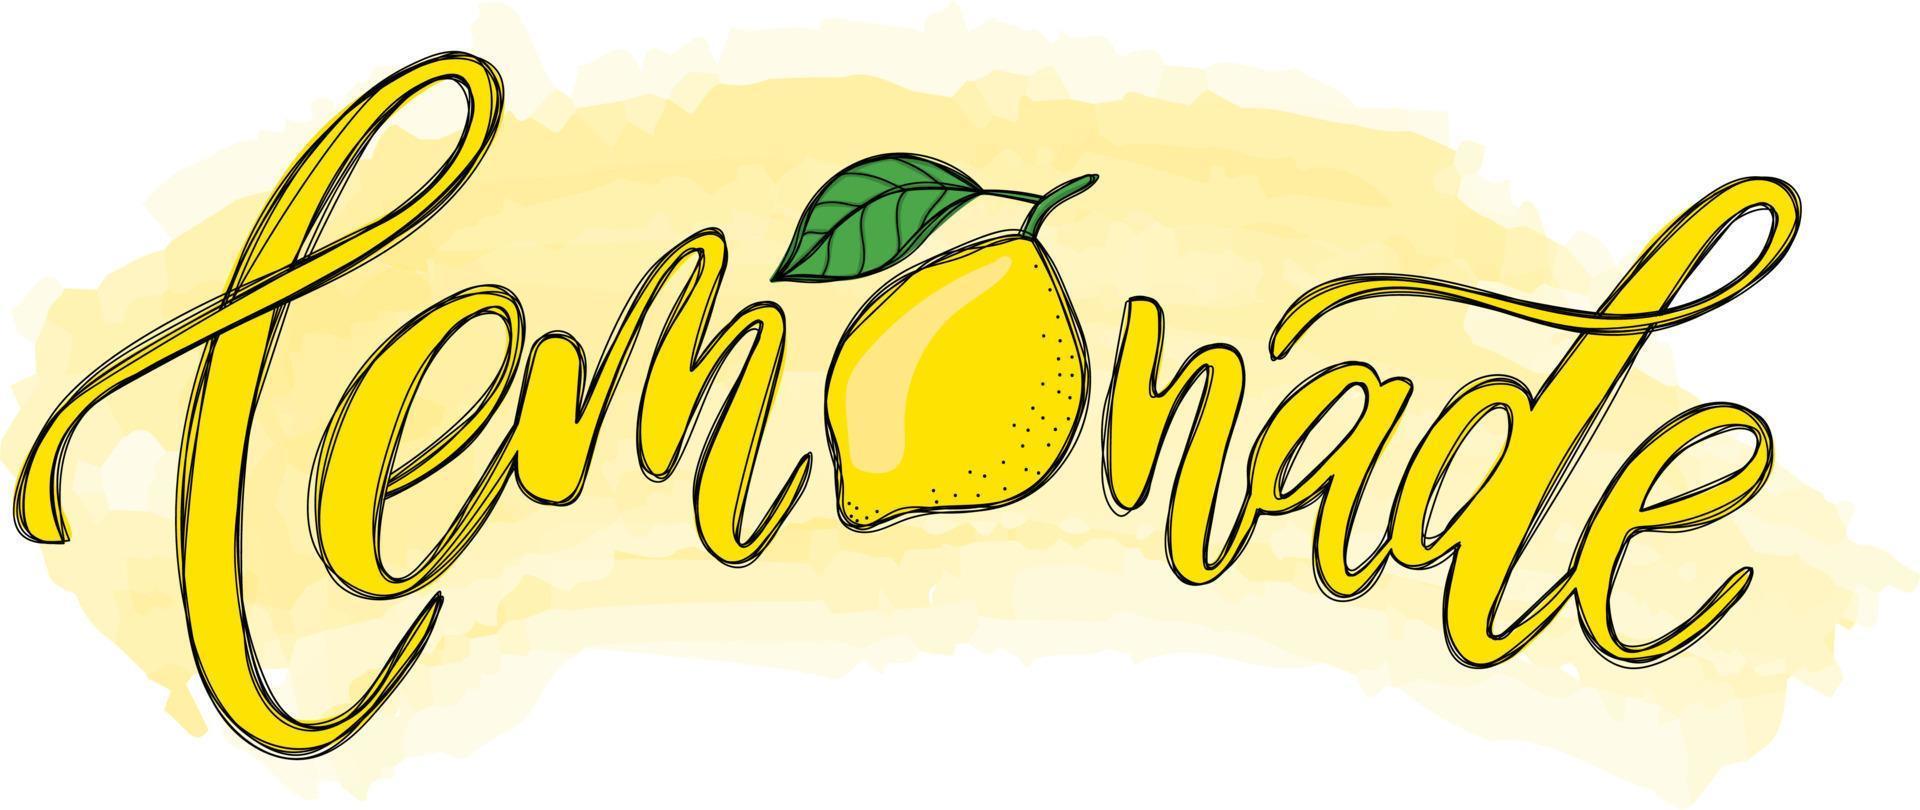 lettere fresche di limone calligrafiche scritte a mano vettore